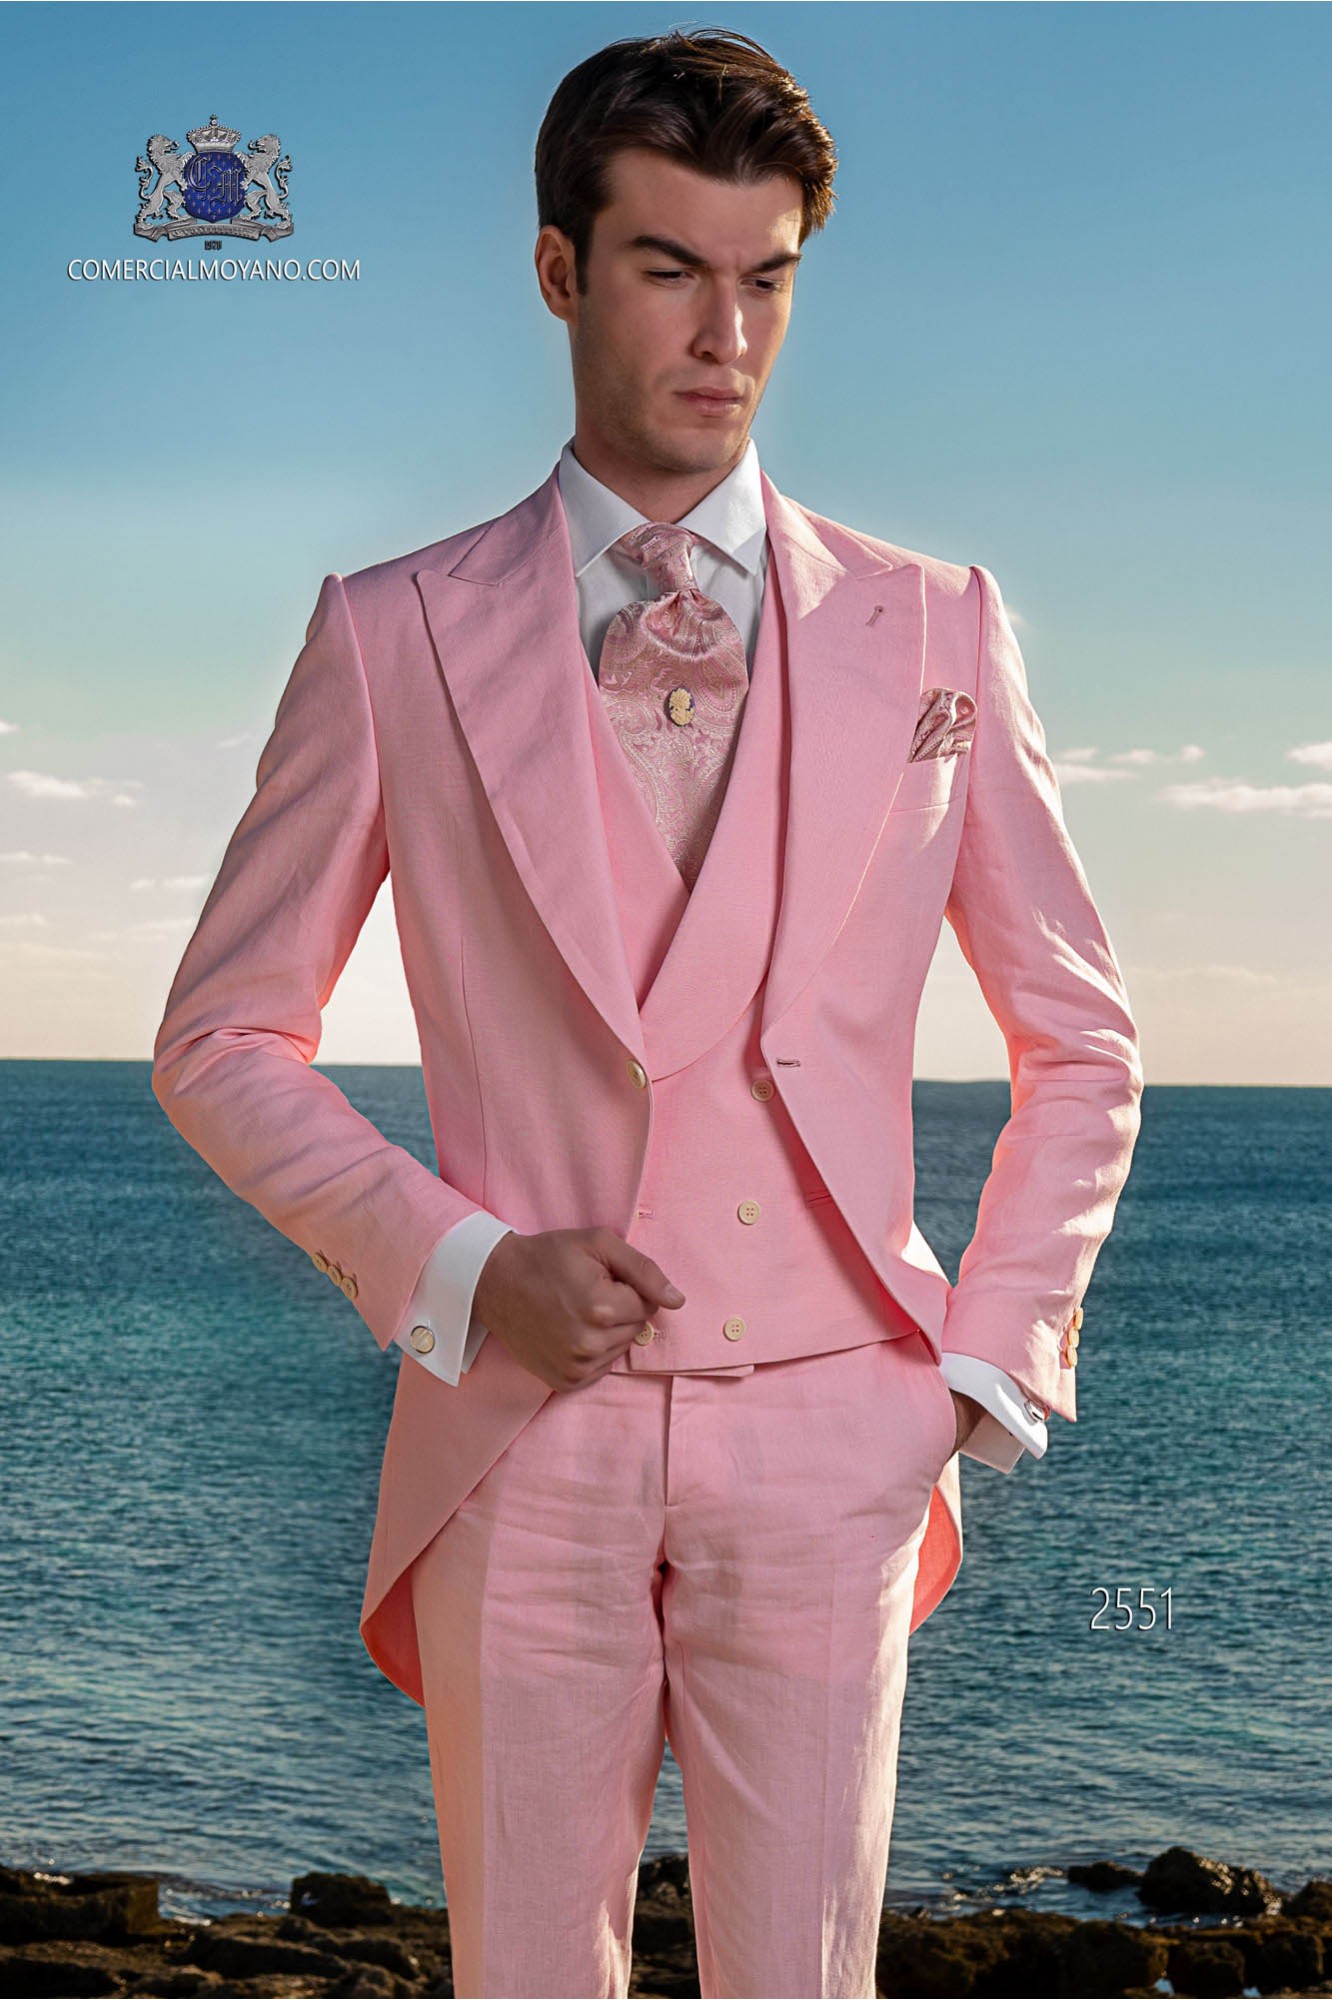 Chaqué - Levita de novio rosa en tejido de lino modelo: 2551 Mario Moyano colección Hipster